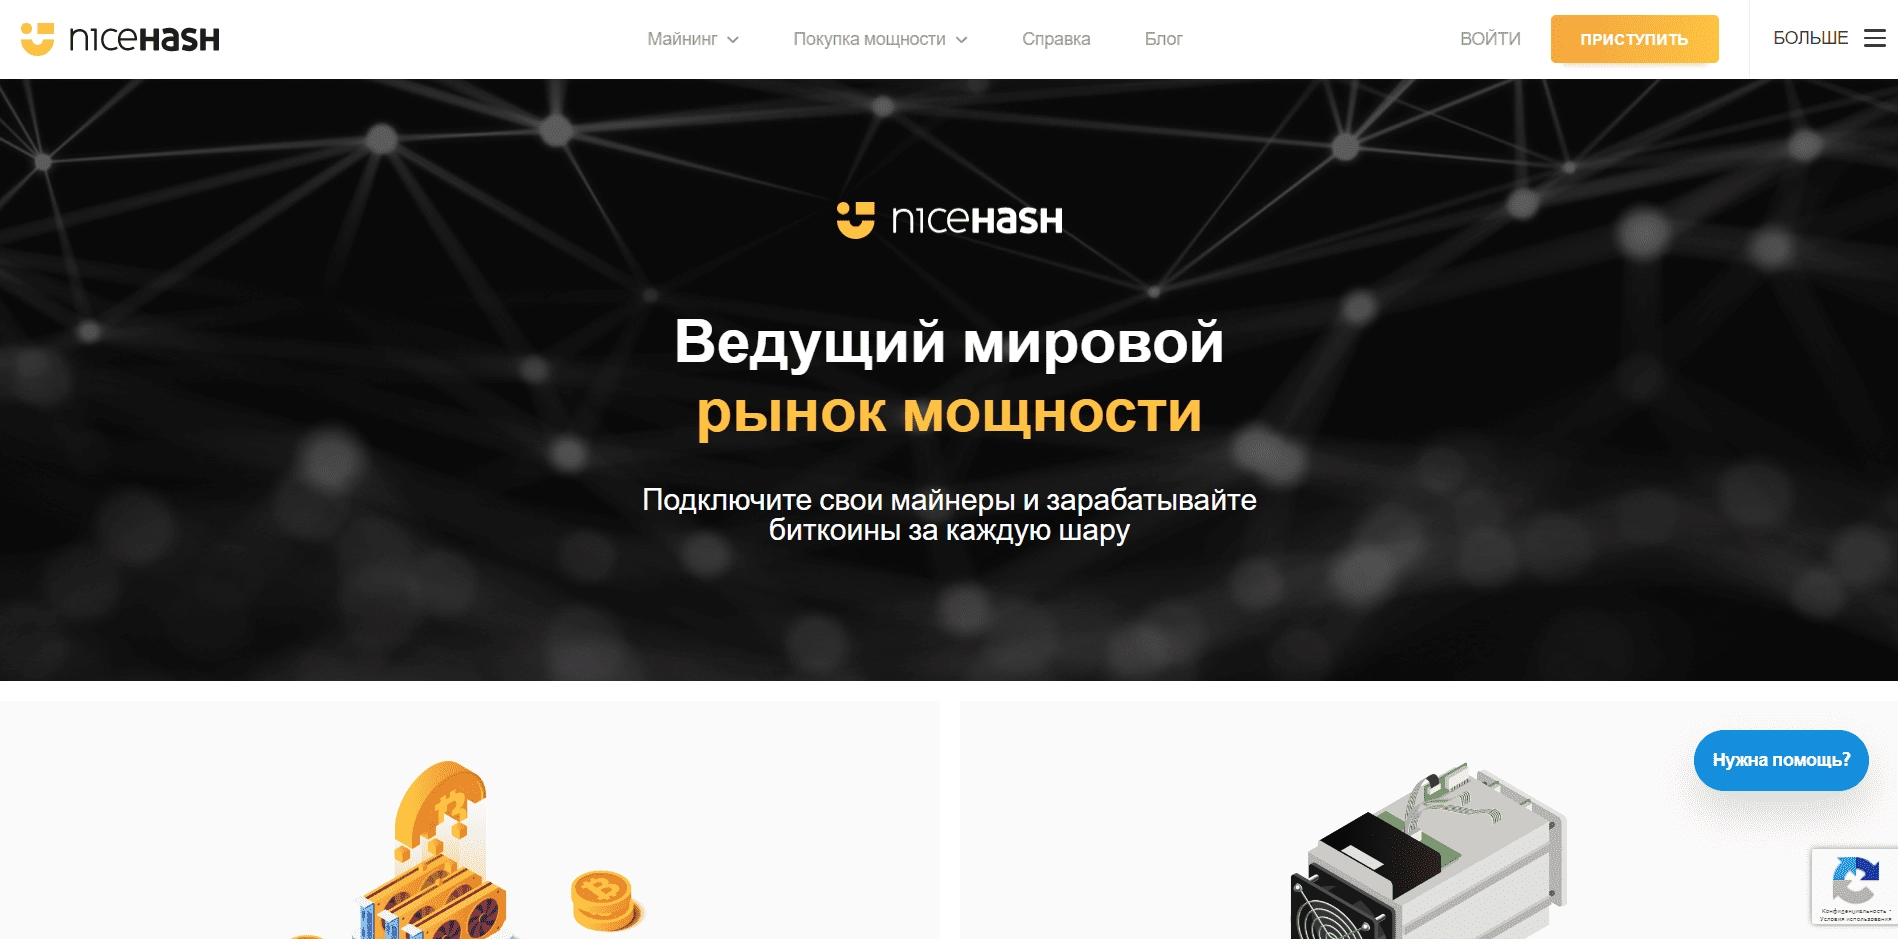 Рынок хэш-мощностей криптовалют NiceHash, главная страница сайта